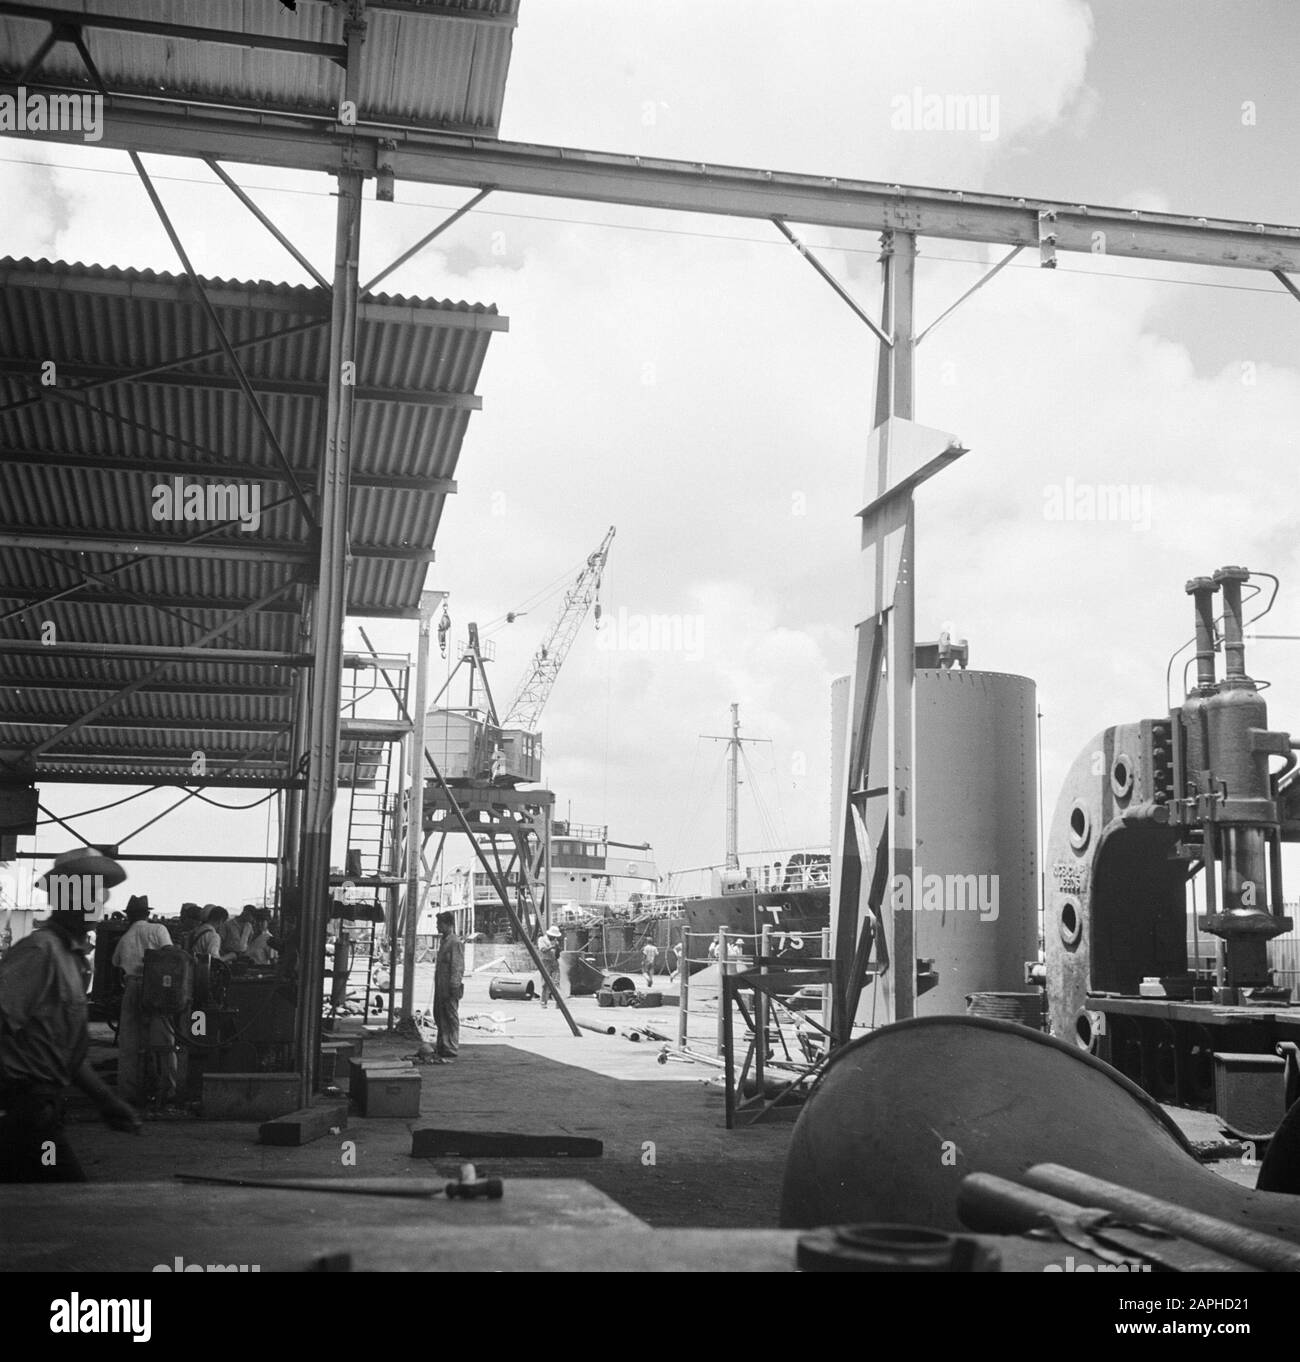 Viaggio in Suriname e Antille Olandesi Descrizione: Il porto della raffineria di petrolio della CPIM sull'Isla il Curaçao Data: 1947 Località: Curaçao Parole Chiave: Porti, raffinerie, navi Nome dell'istituzione: CPIM Foto Stock